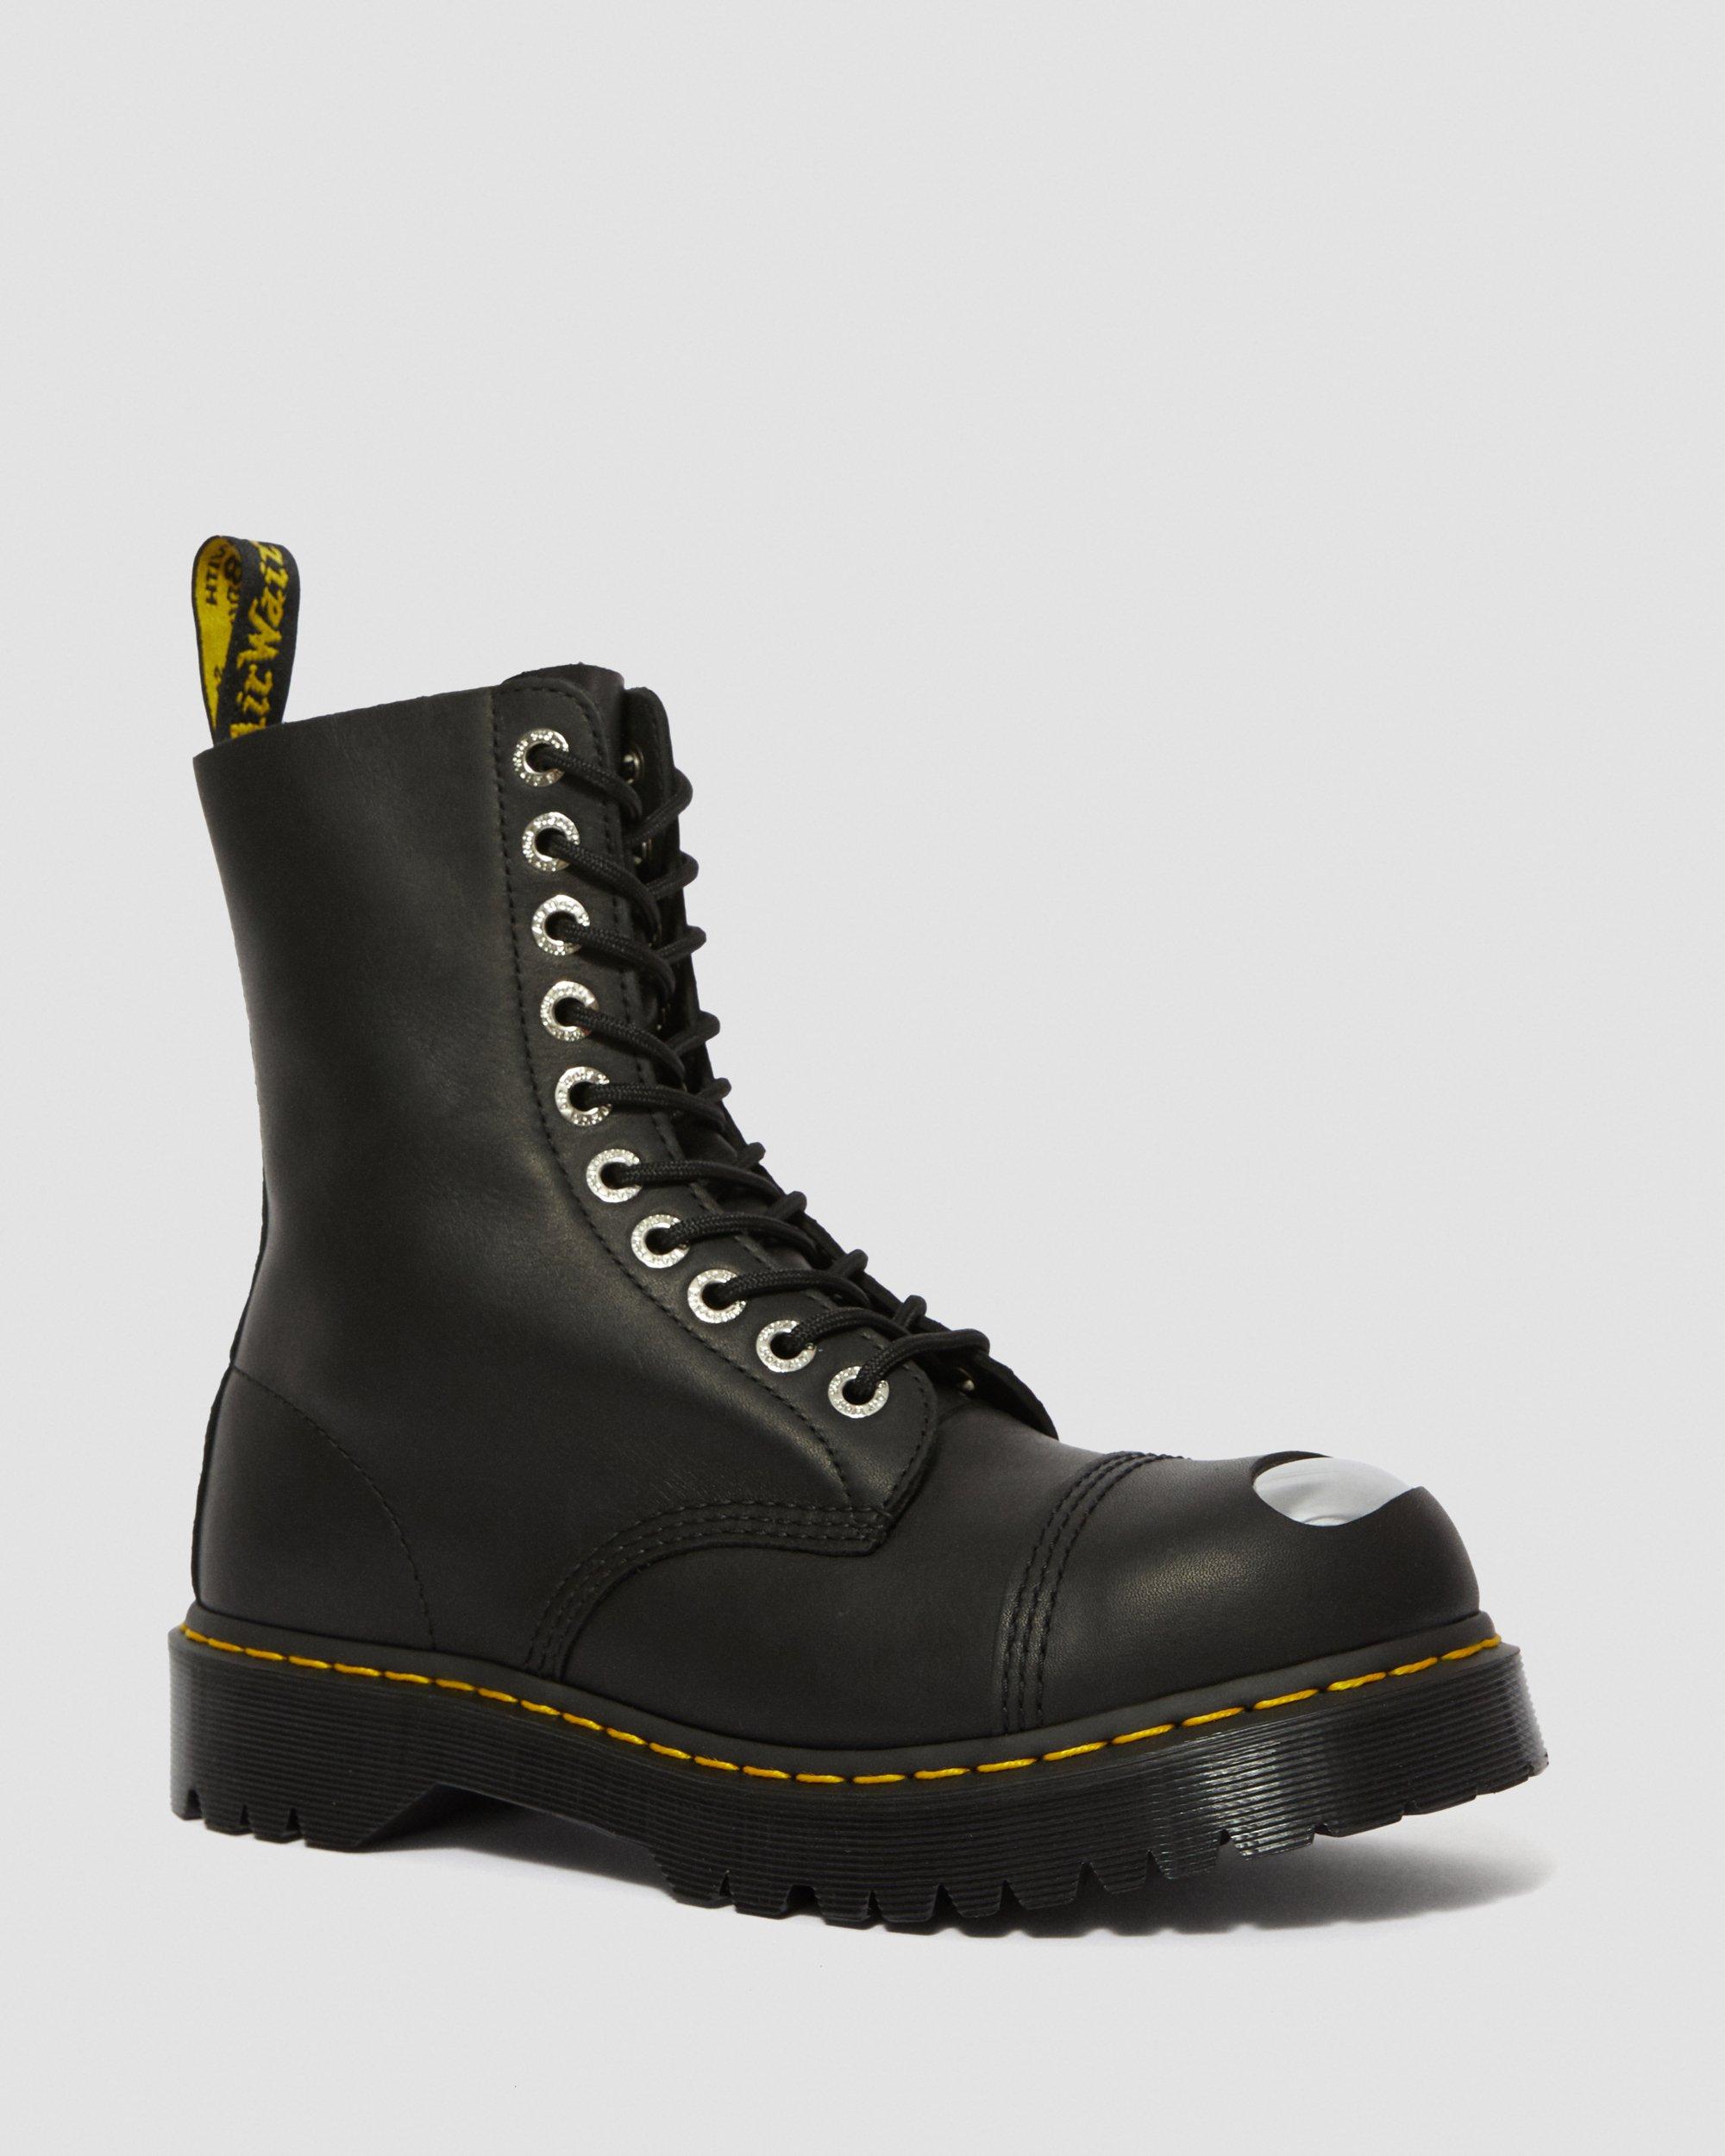 8761 Bxb Toe Cap Boot, Black | Dr. Martens